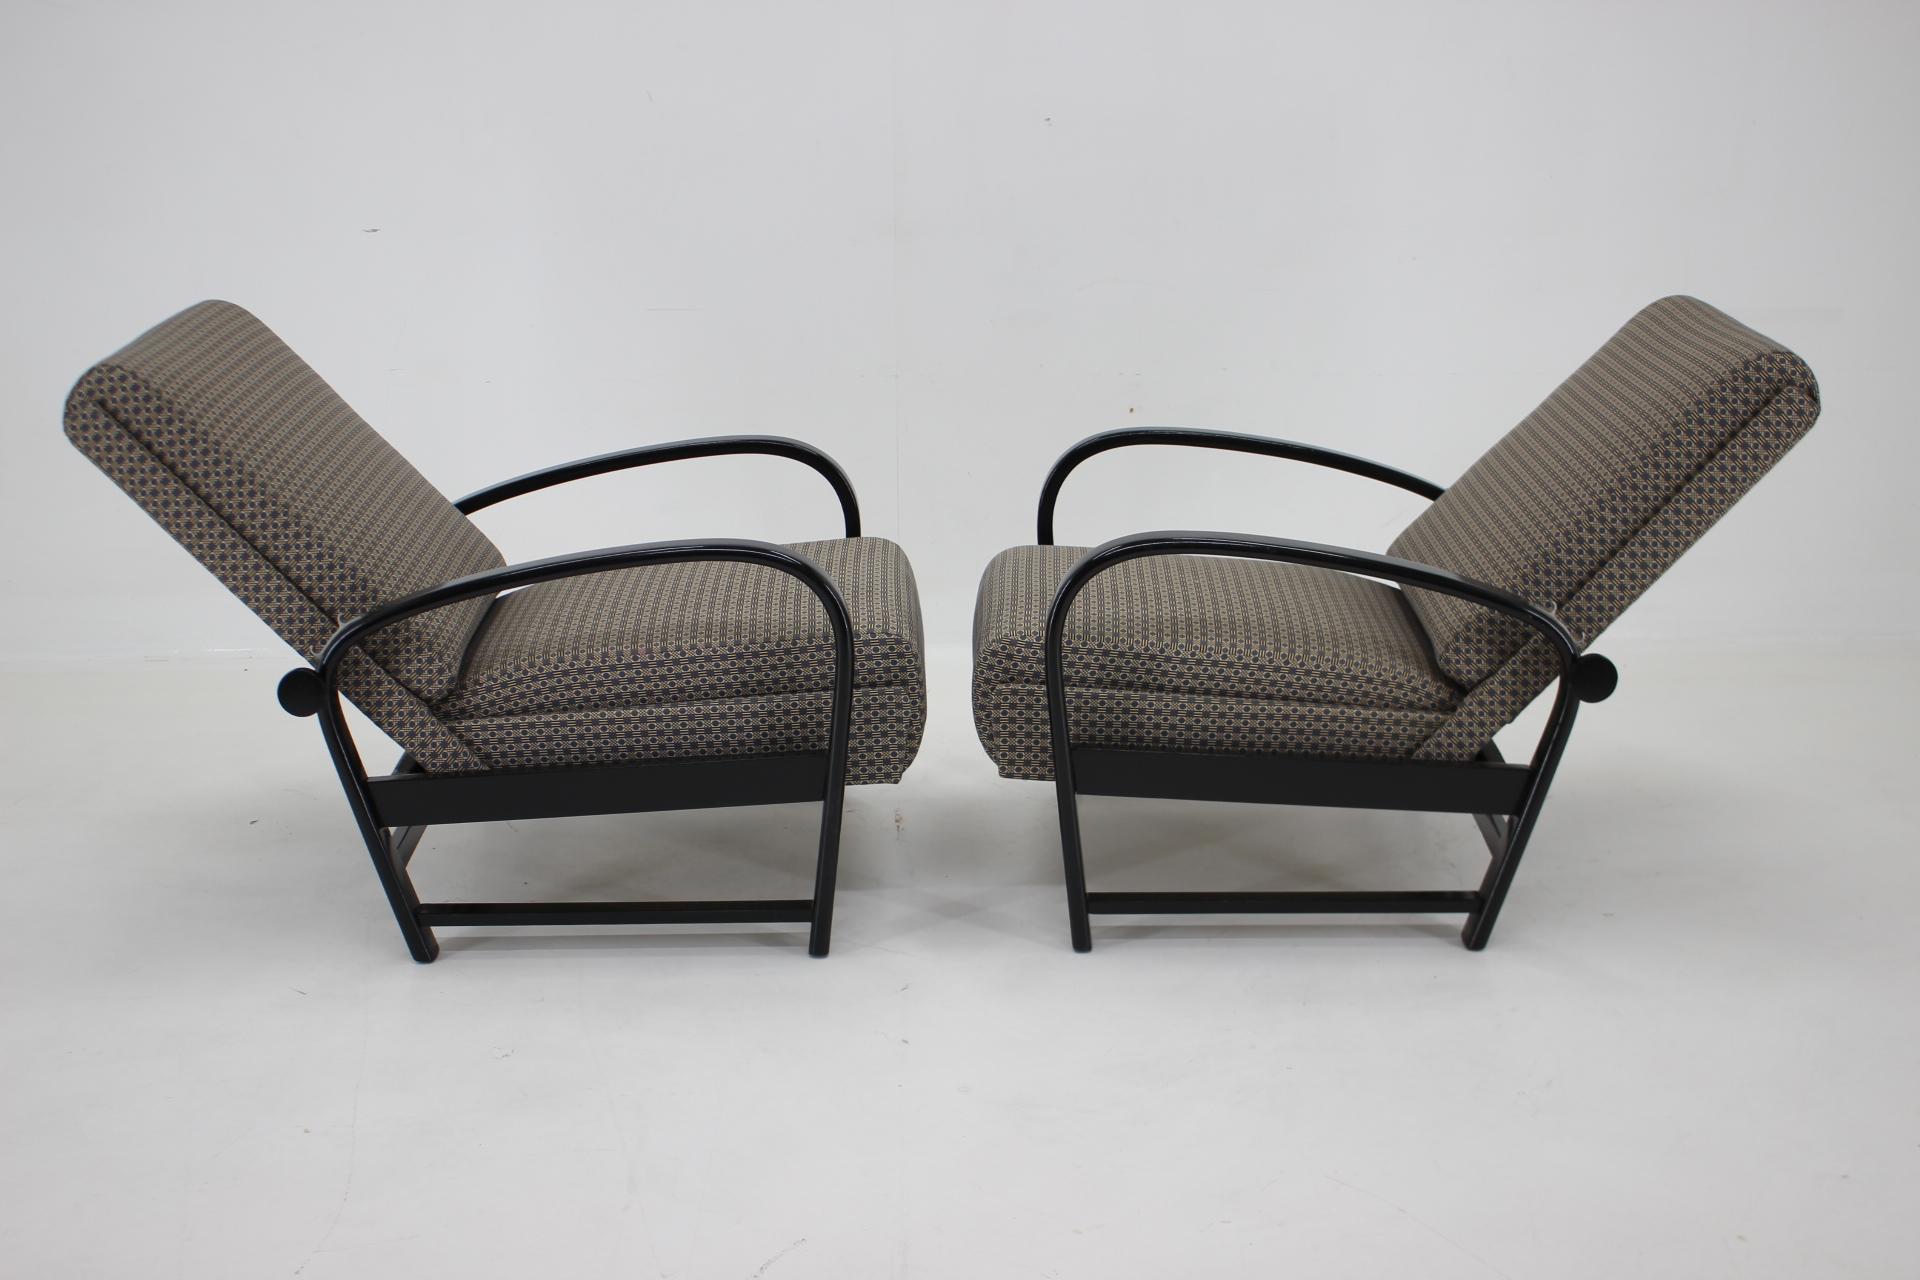 - Neu gepolstert 
- Neu lackierte Holzteile in schwarzer Farbe 
- Höhe des Sitzes 43 cm
- verstellbar 82 - 105 cm